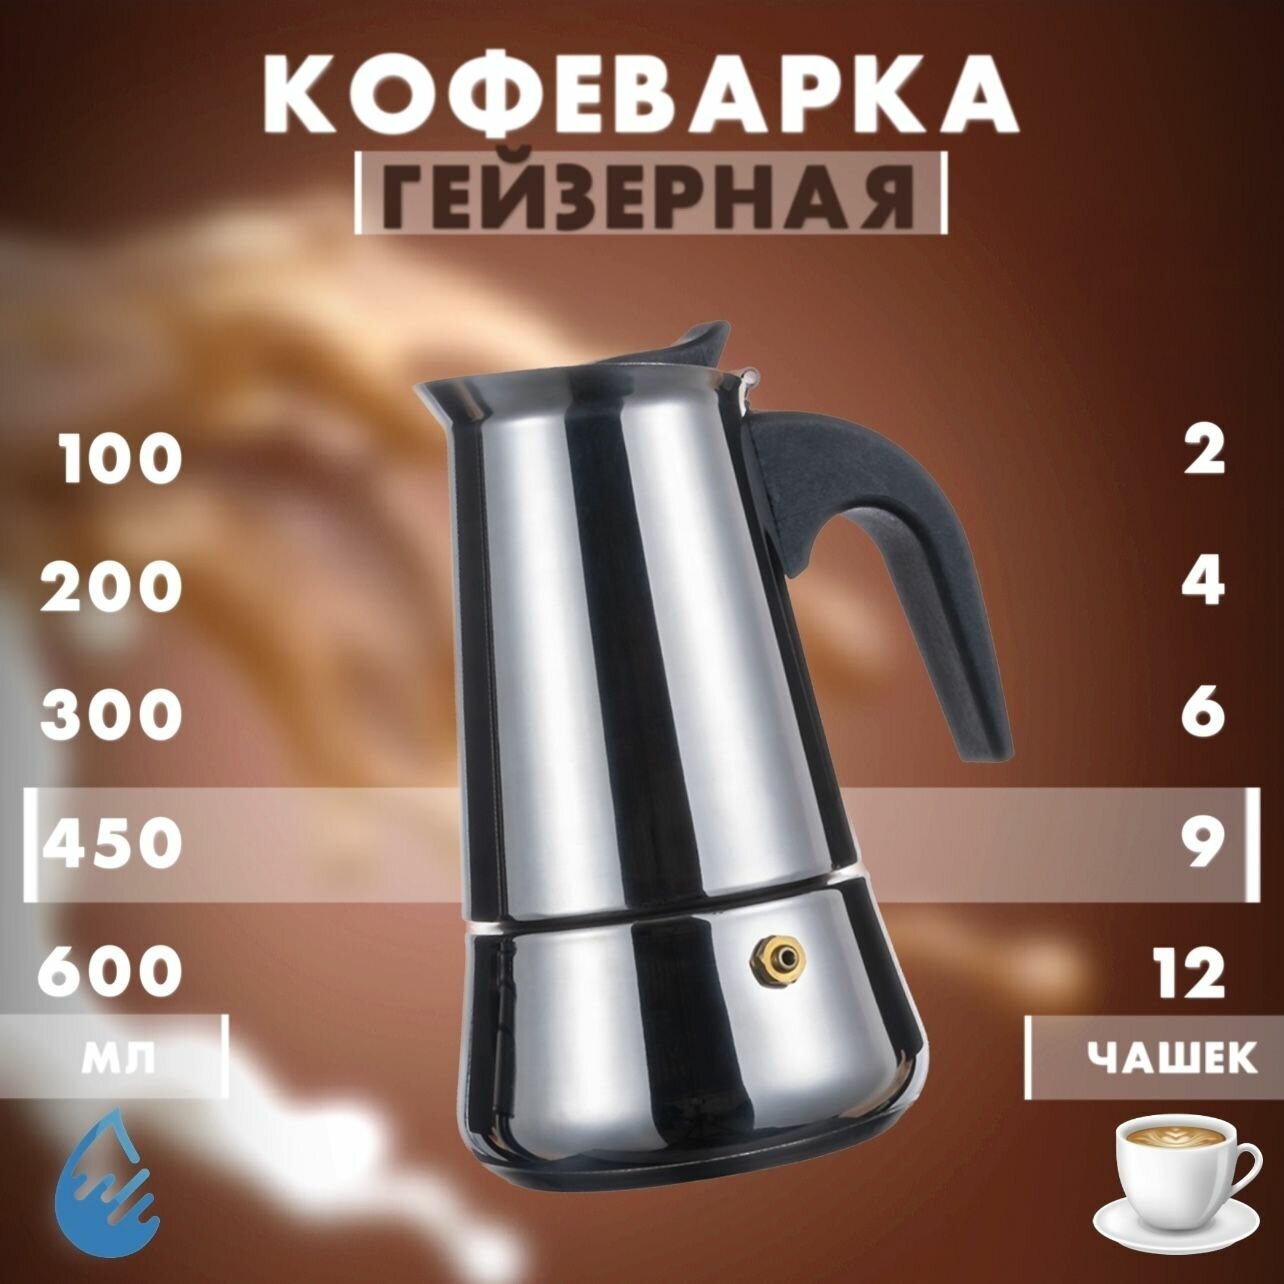 Кофеварка гейзерная для плиты/ESPRESSO MAKER/Турка для кухни 9 чашки 450 мл